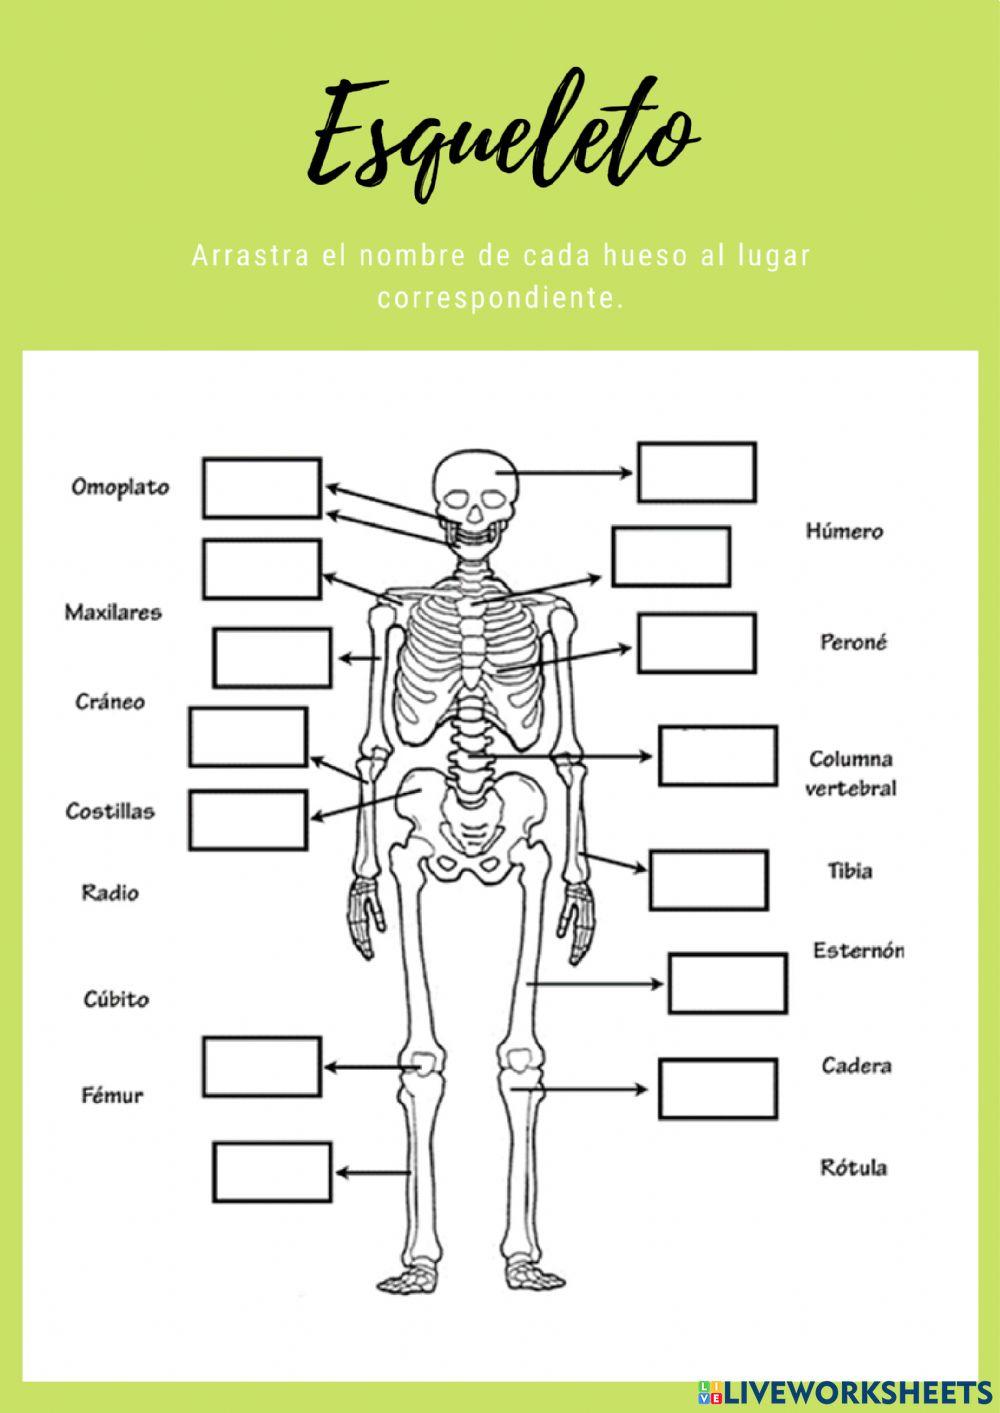 Esqueleto y músculos